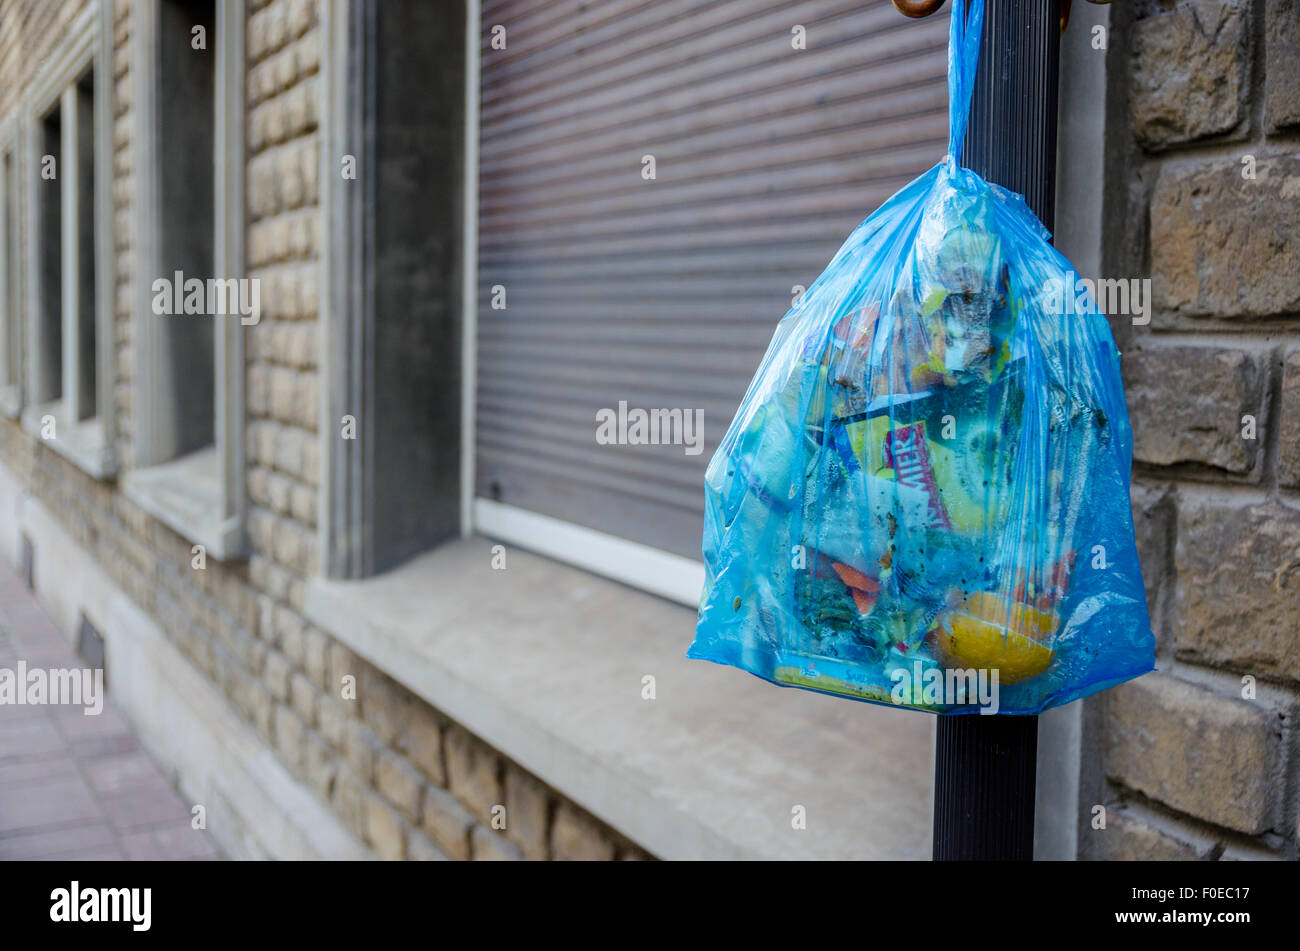 Sac poubelle bleu dans les rues de Boulogne sur Mer, Pas de Calais, France Banque D'Images